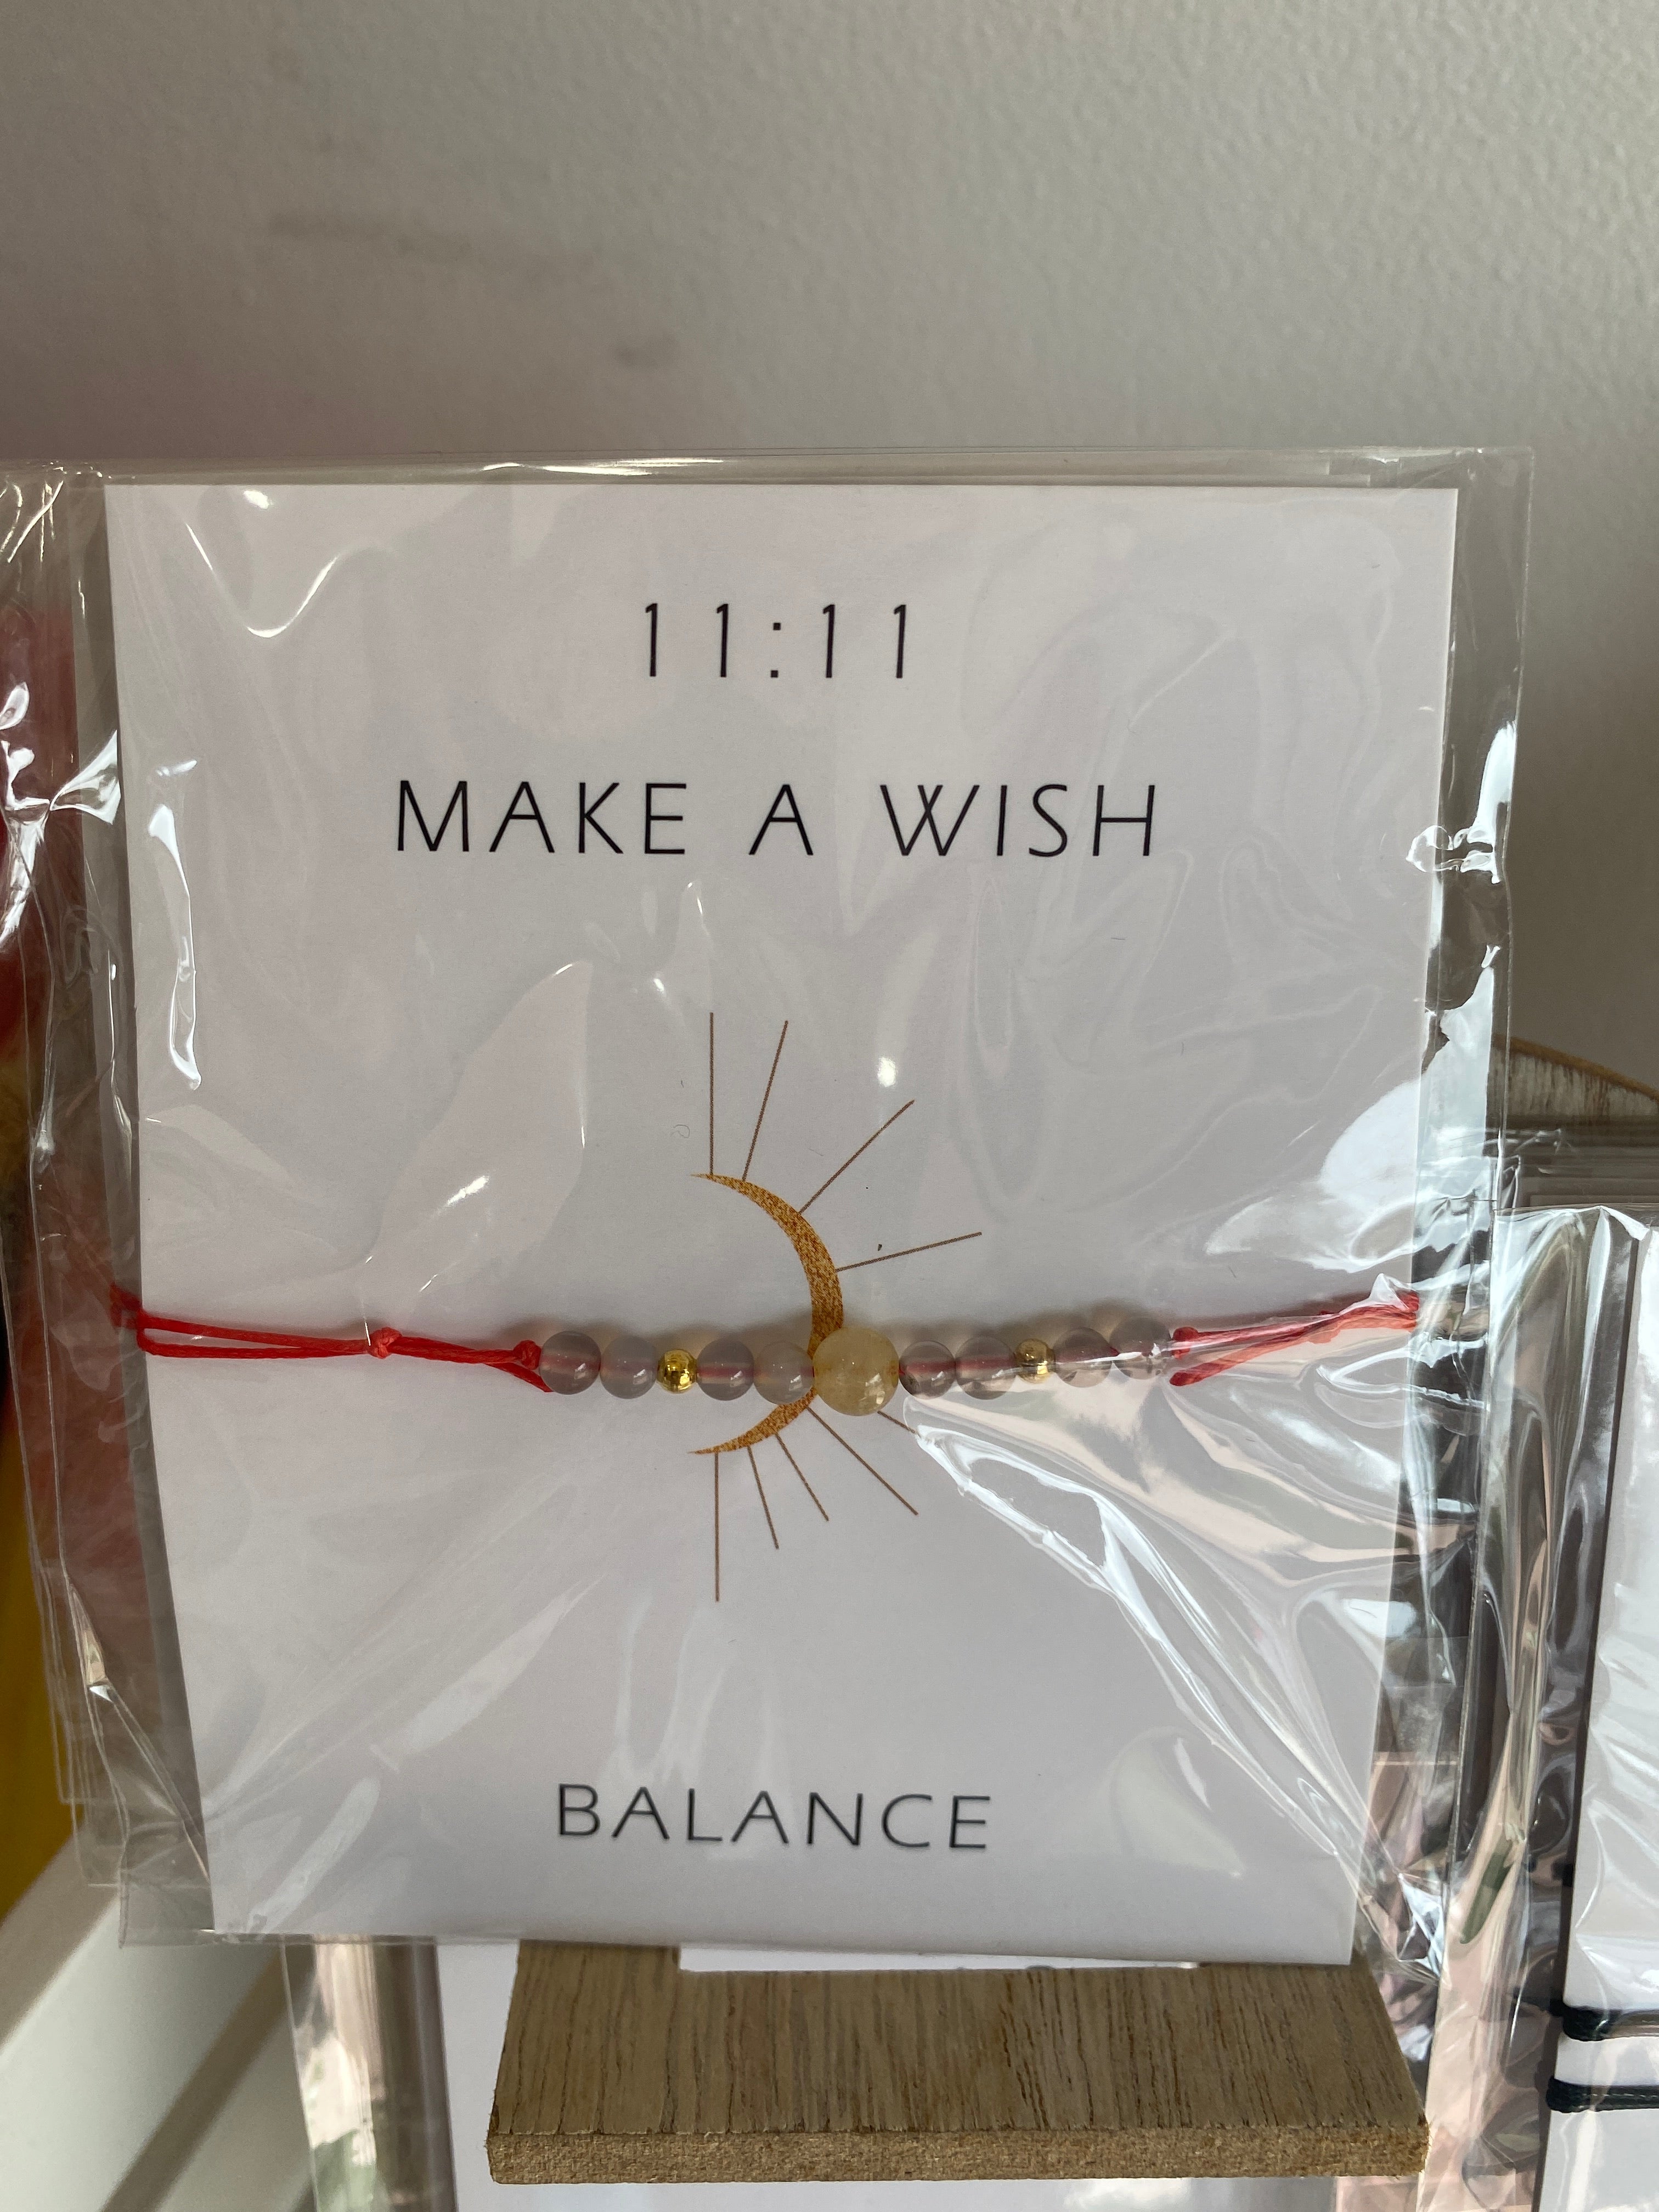 Make a wish balance